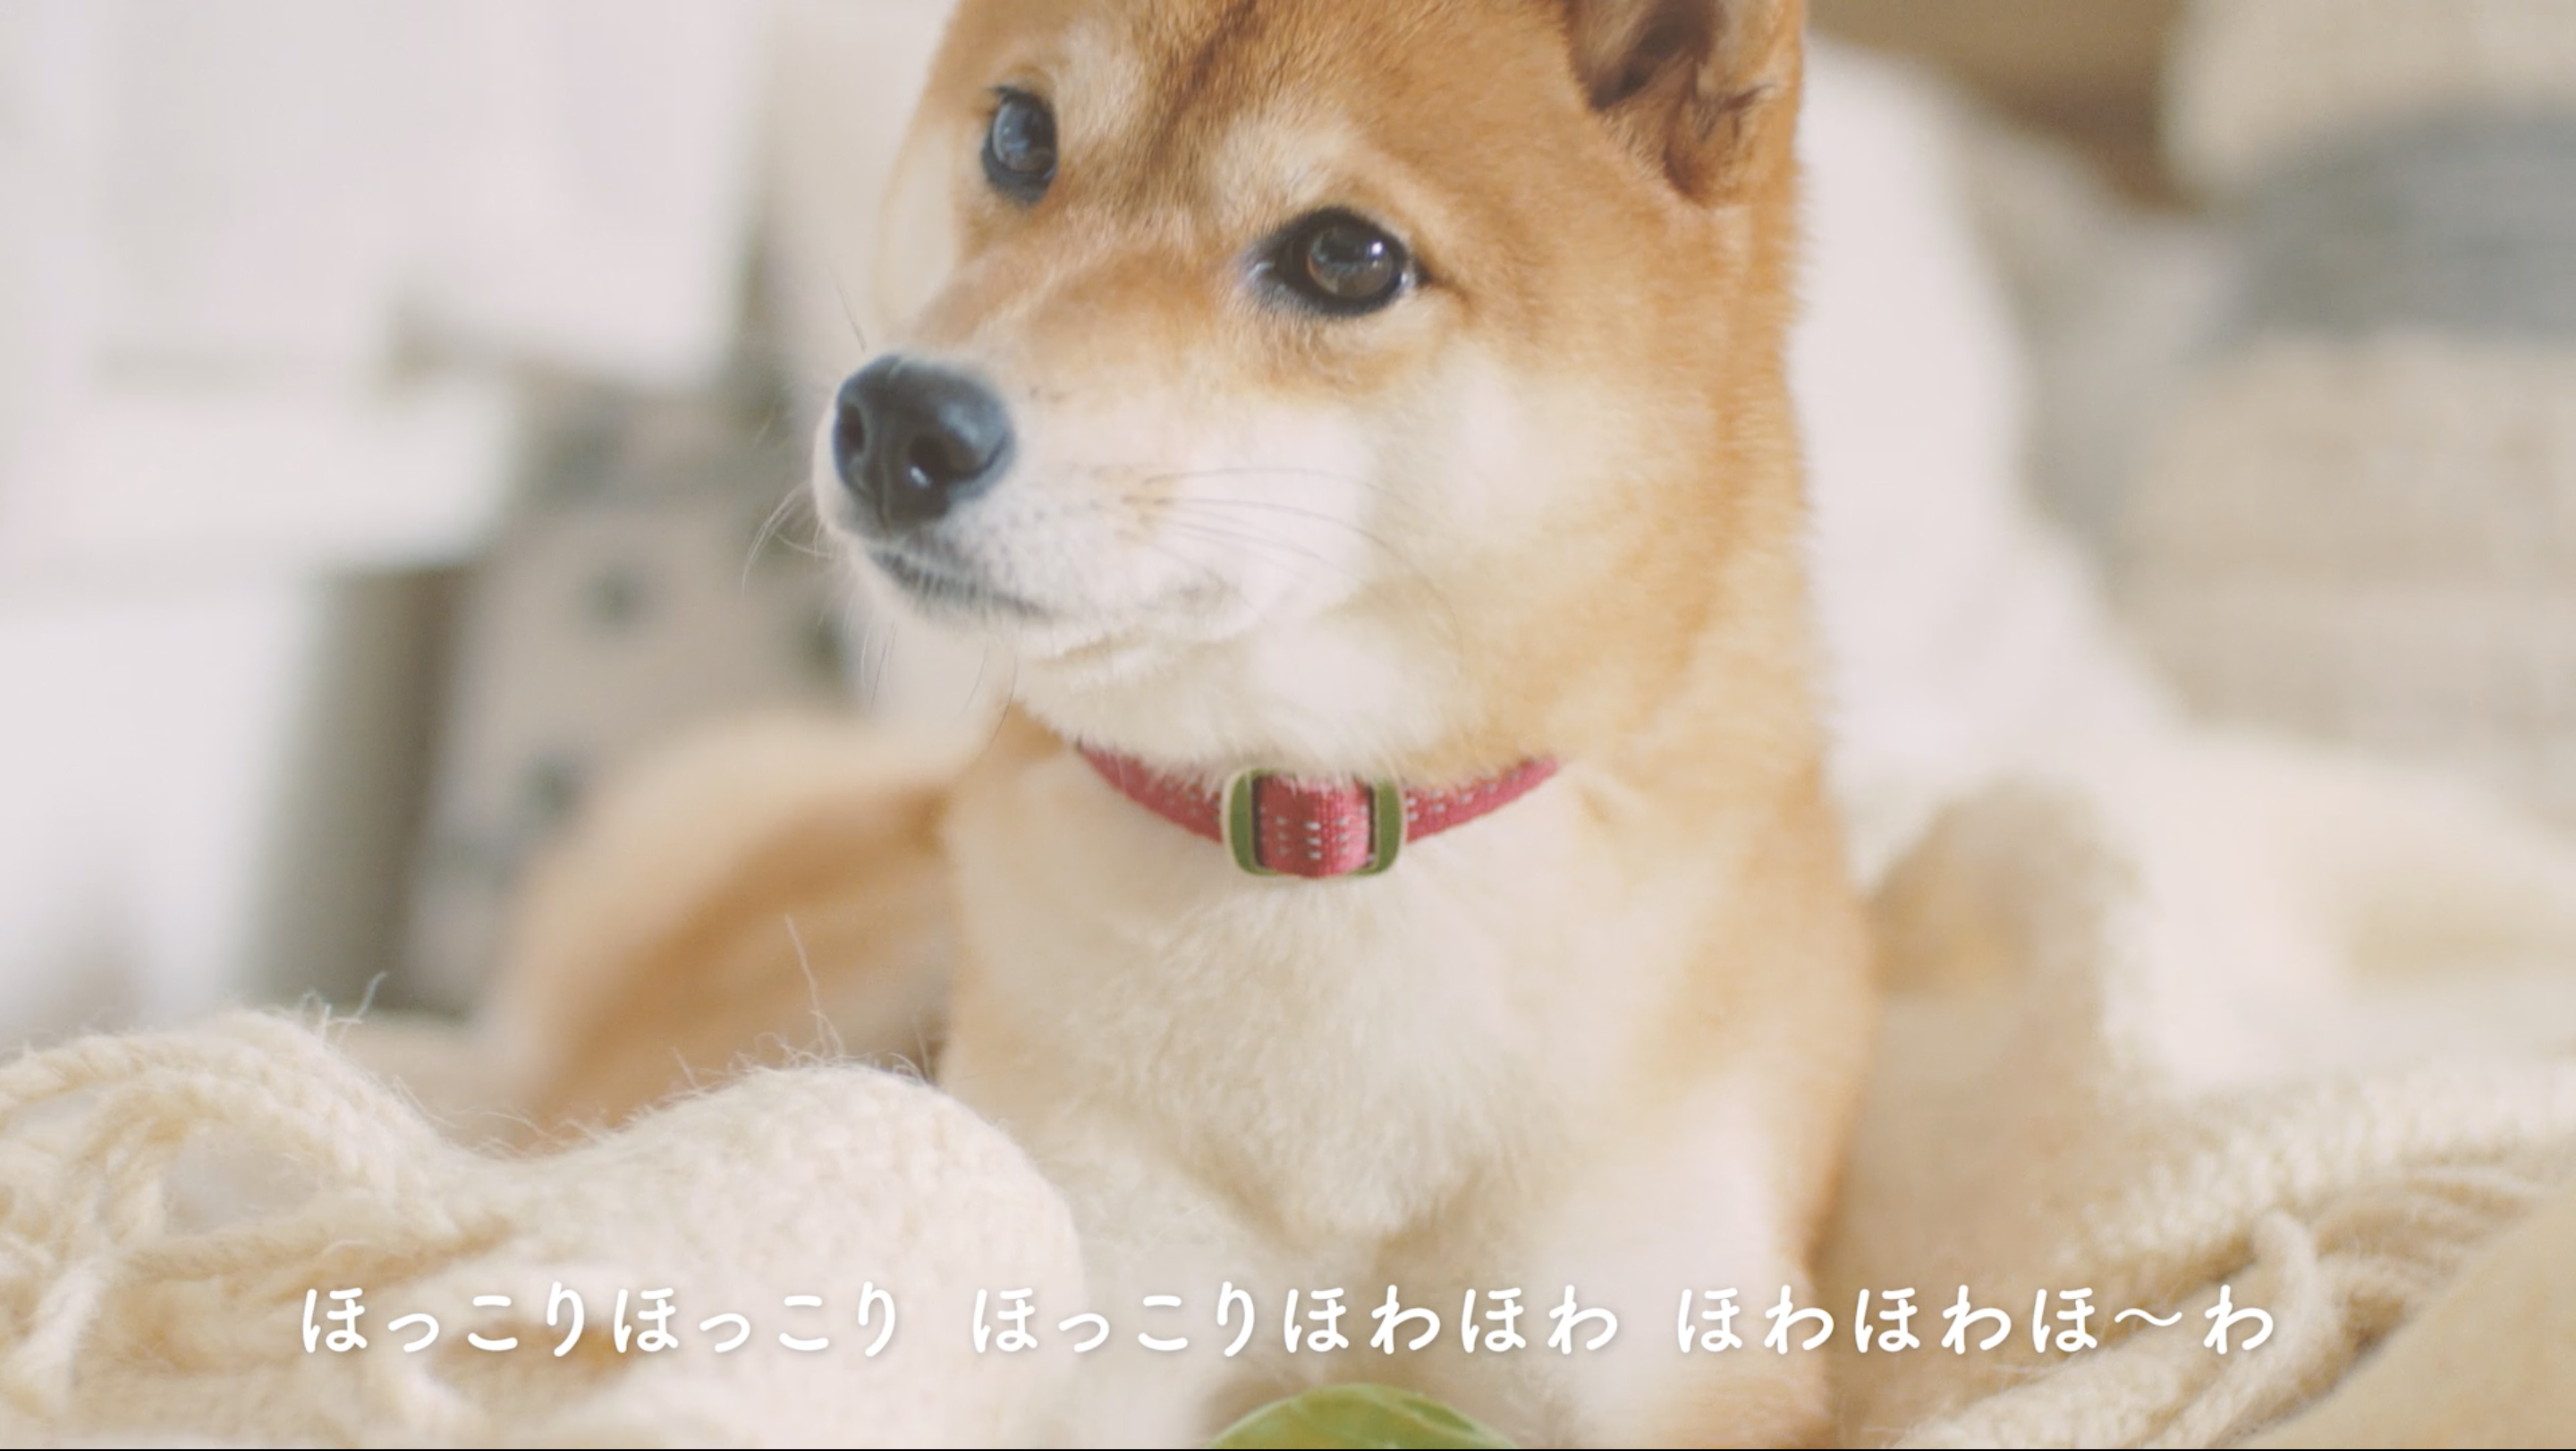 犬の日 は愛犬とほっこり癒される一日に Uccから 愛犬ほっこりあるある 動画を公開 19年11月1日 エキサイトニュース